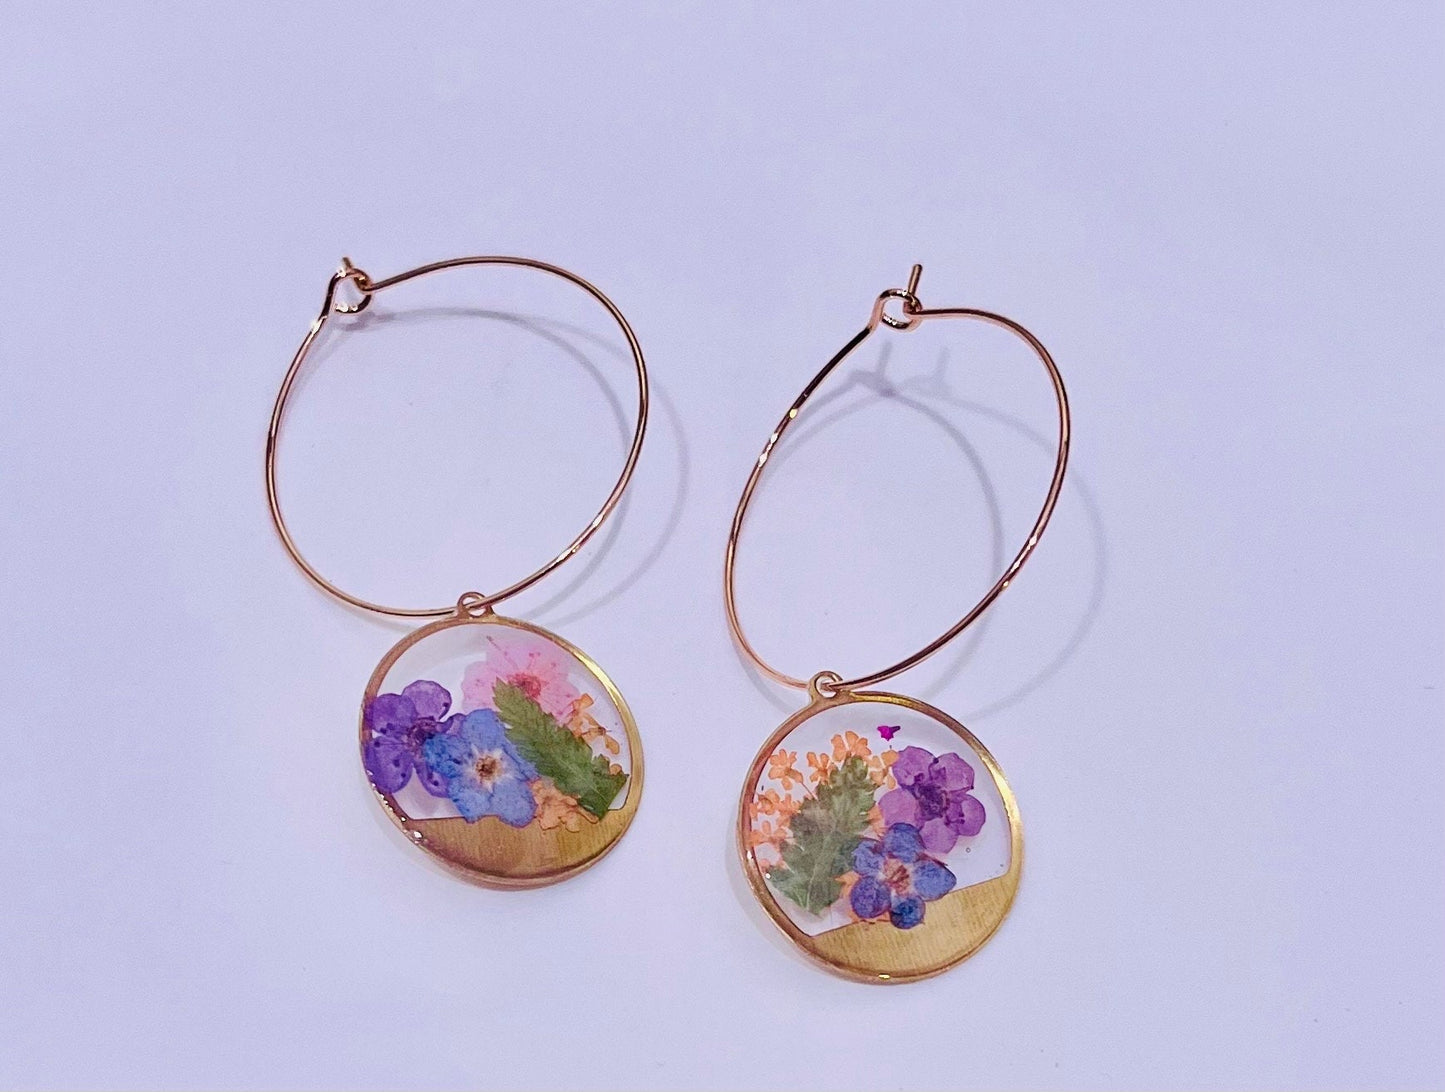 Handmade with pressed flowers & Ferns. Hypoallergenic Earrings. Terrarium earrings. 18K Gold Plated Hoops.